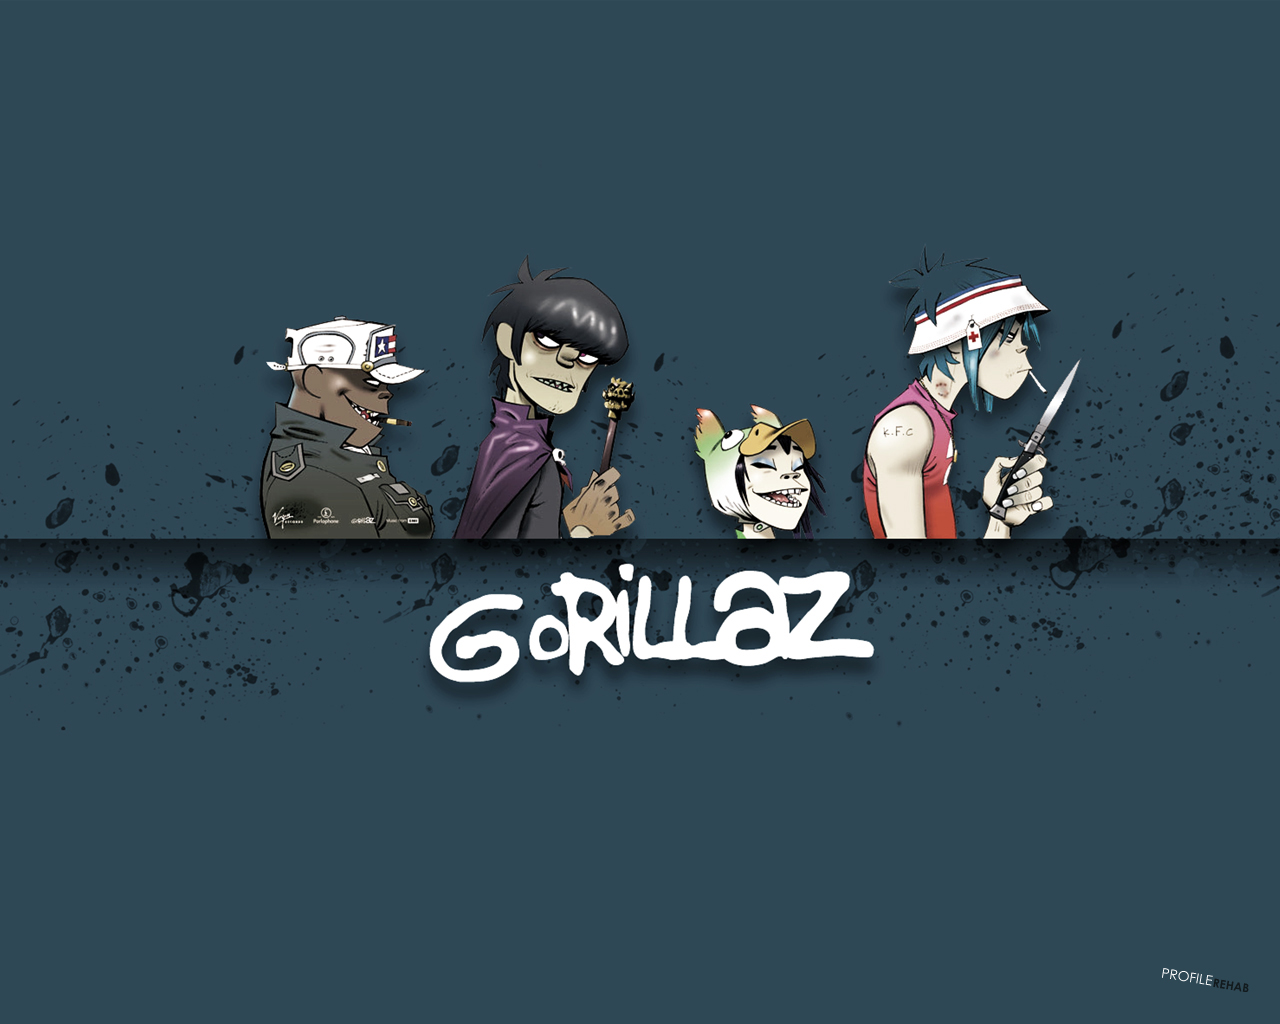 [1280x1024] Free Gorillaz Wallpaper - Cool Gorillaz , HD Wallpaper & Backgrounds